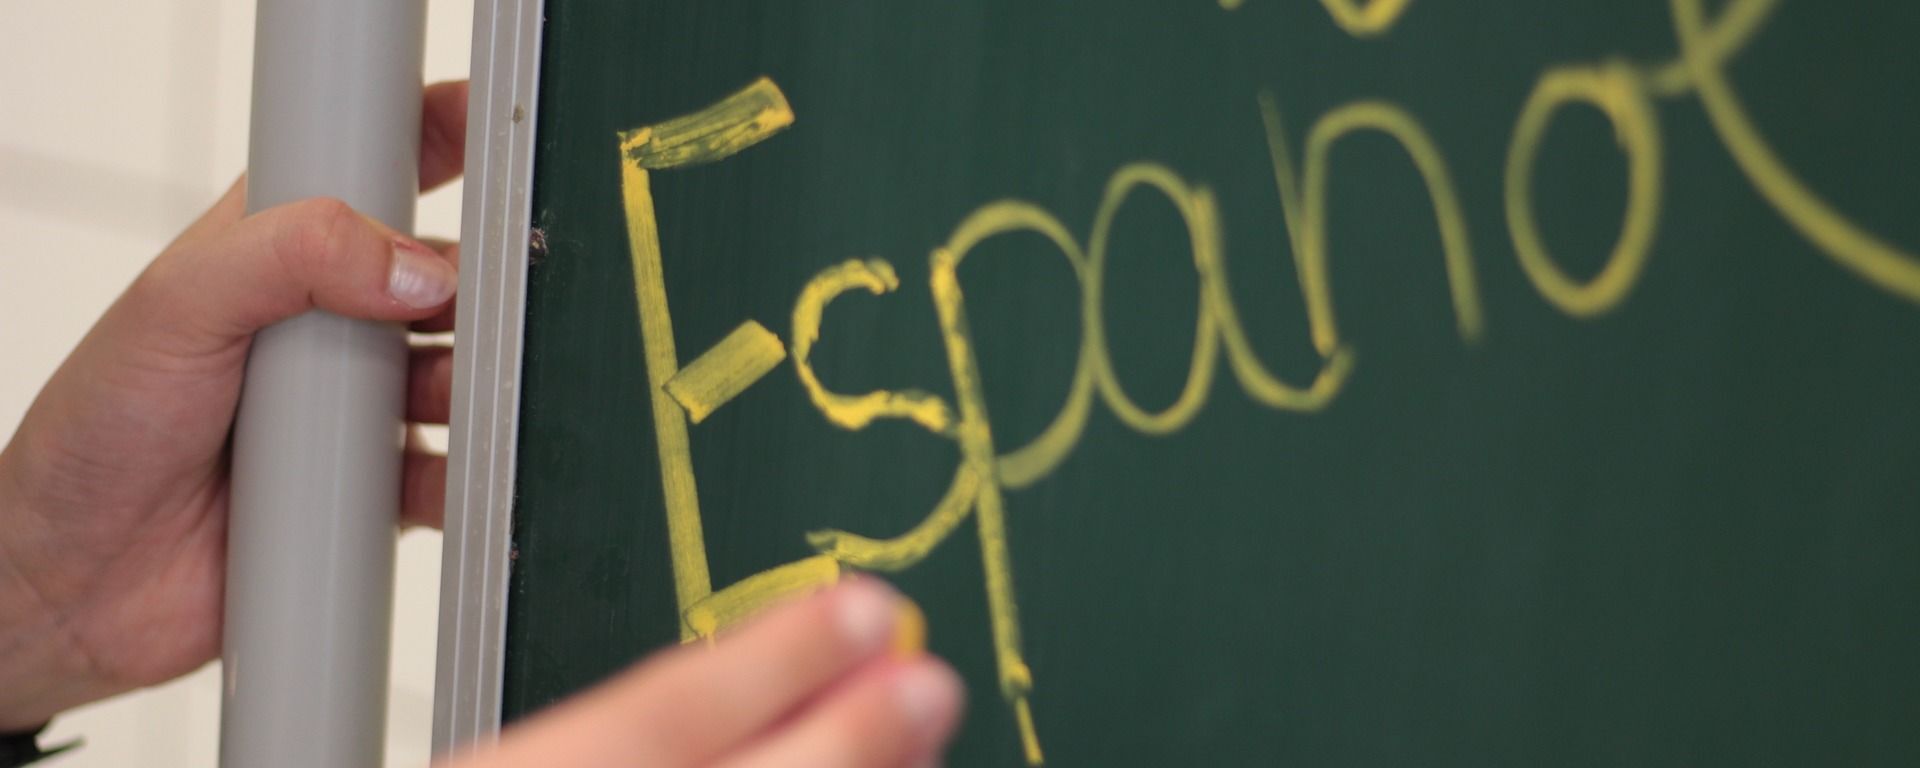 Idioma español. Lengua española. Imagen referencial - Sputnik Mundo, 1920, 22.04.2020